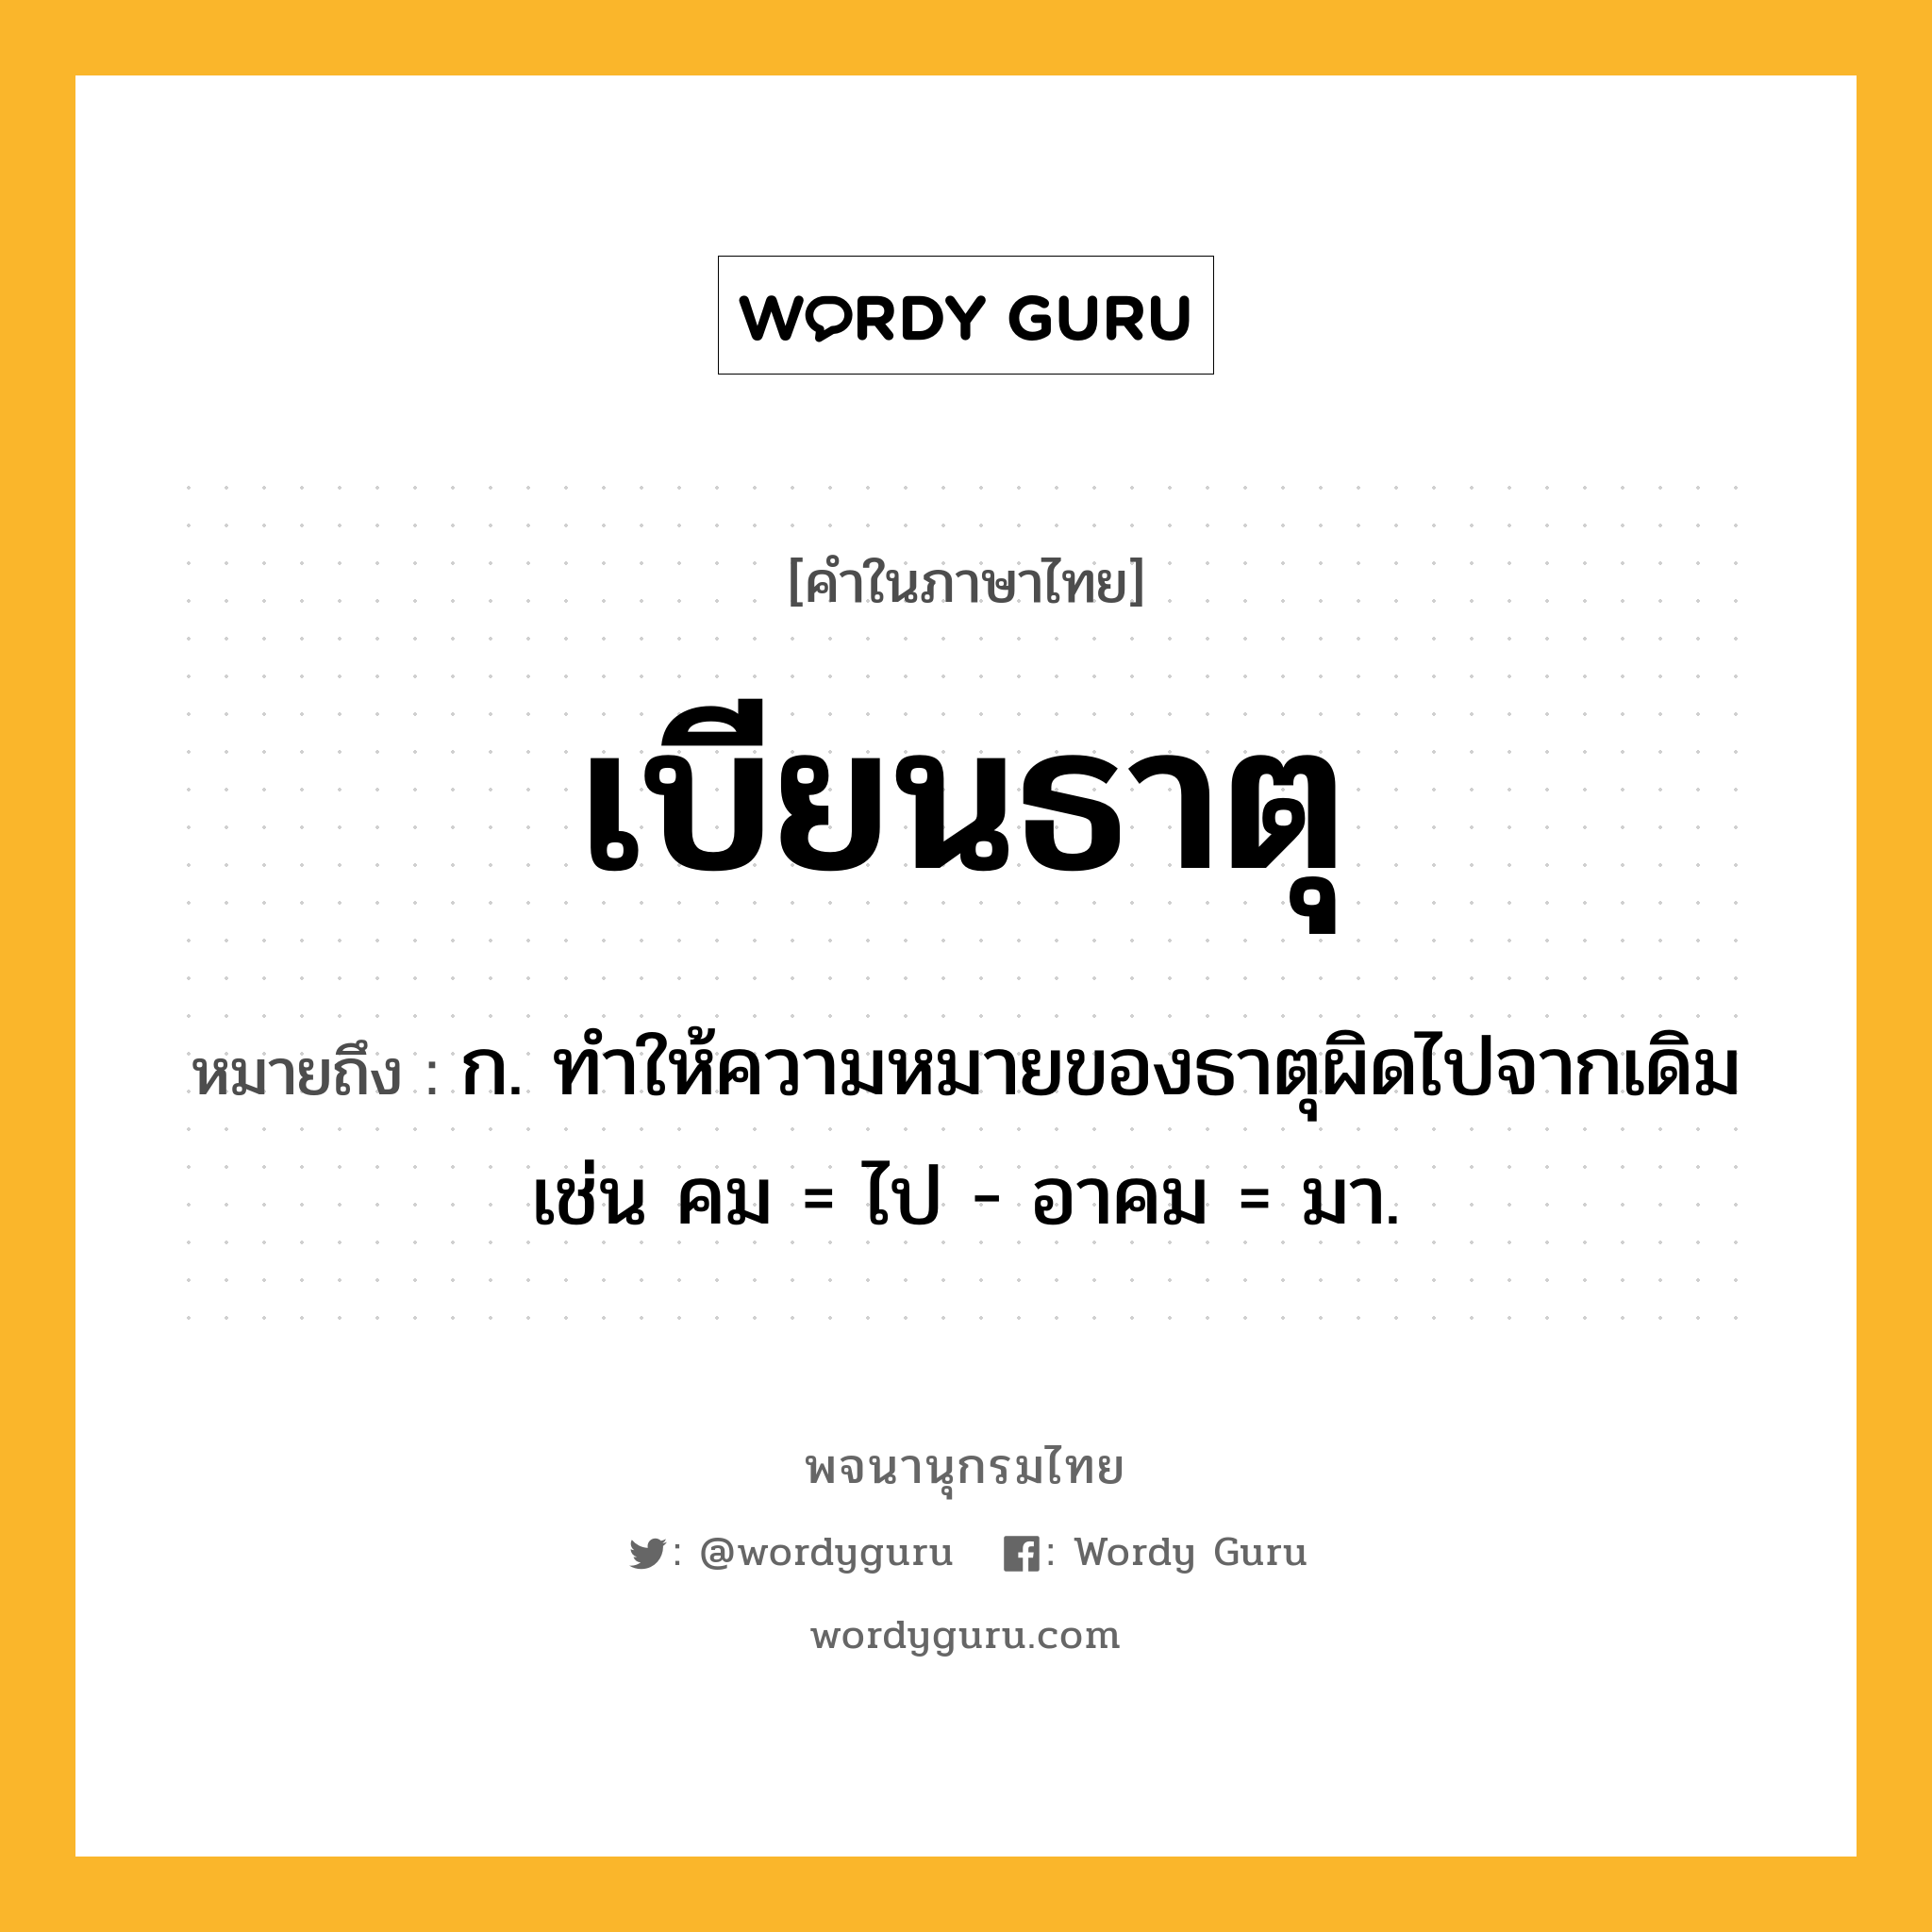 เบียนธาตุ ความหมาย หมายถึงอะไร?, คำในภาษาไทย เบียนธาตุ หมายถึง ก. ทําให้ความหมายของธาตุผิดไปจากเดิม เช่น คม = ไป - อาคม = มา.